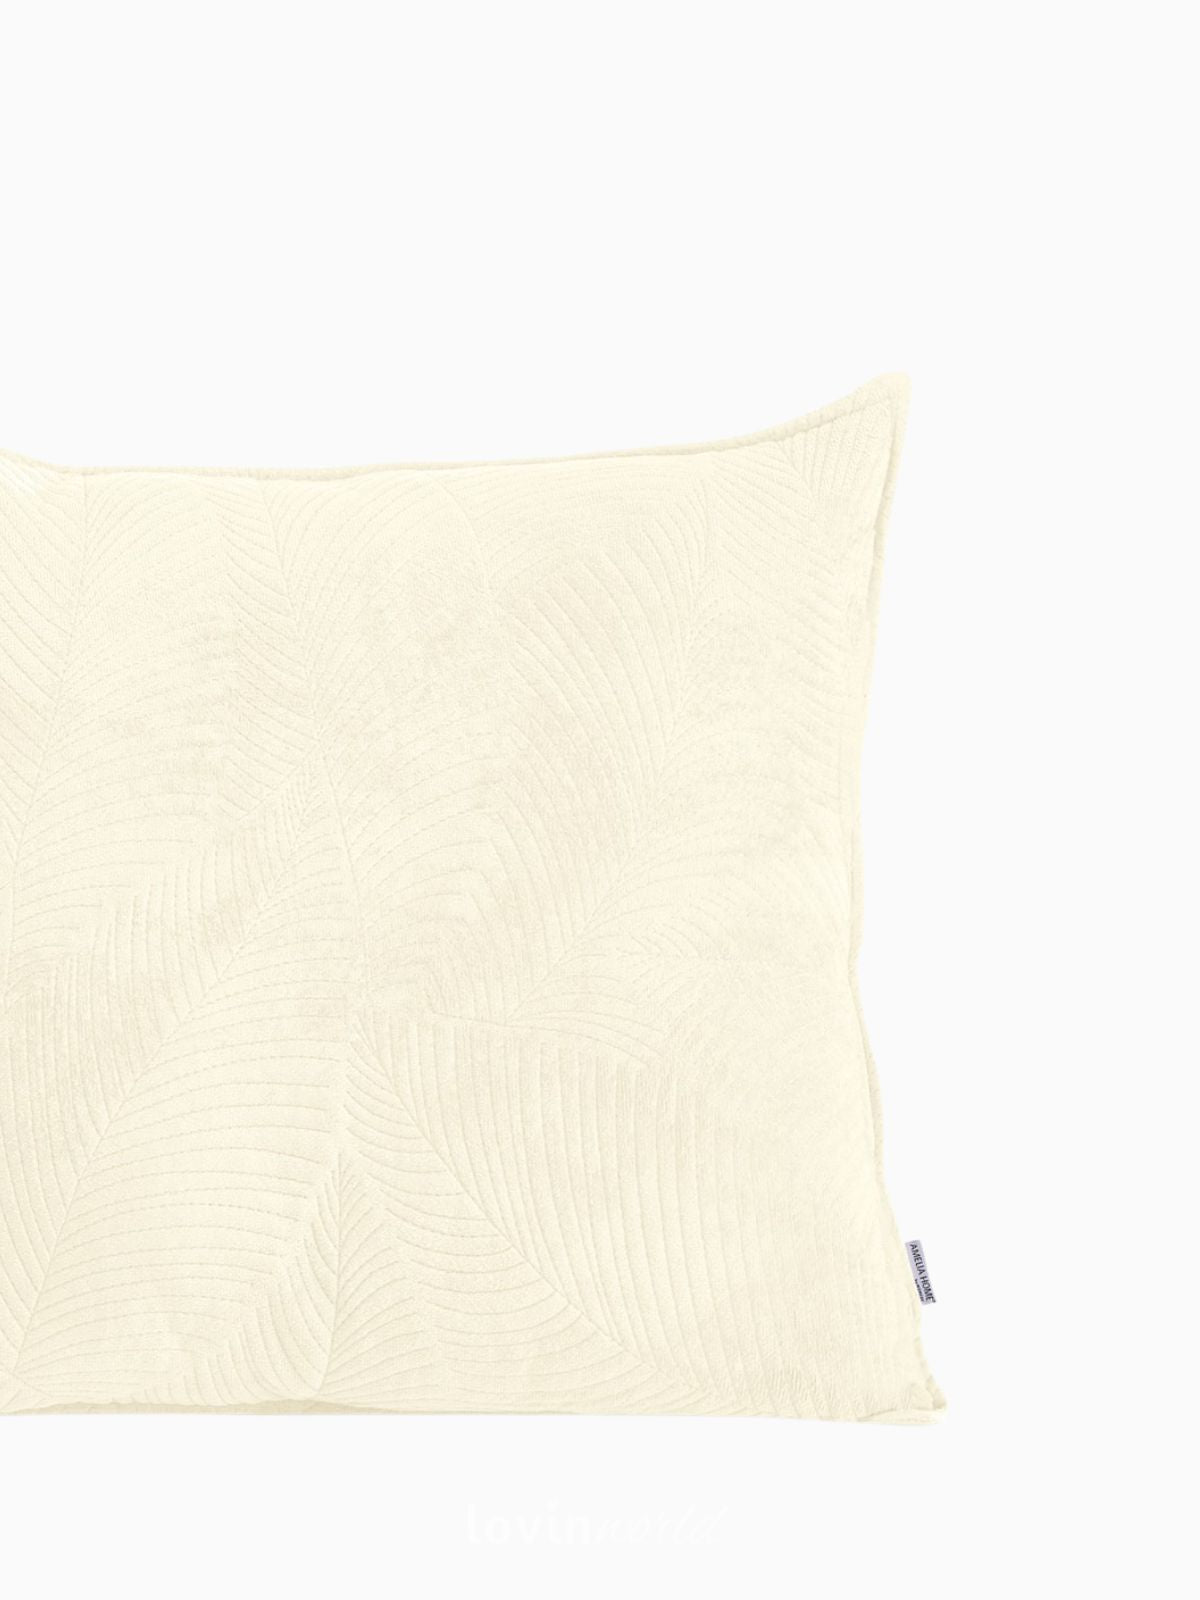 Cuscino decorativo in velluto Palsha, colore beige chiaro 45x45 cm.-3